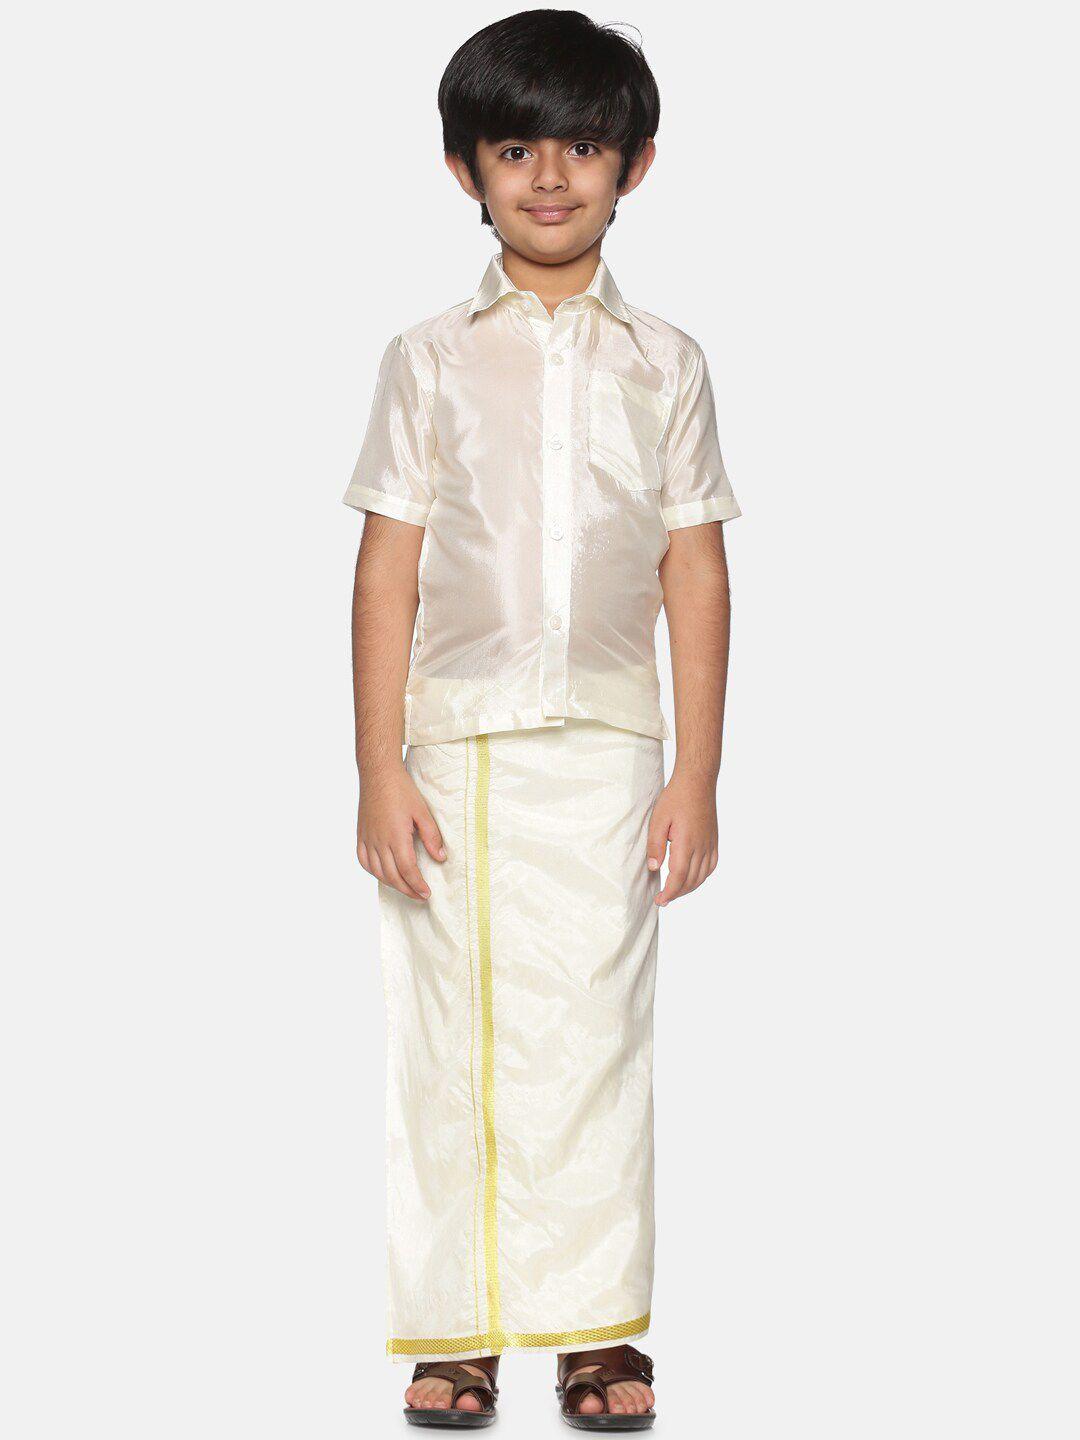 sethukrishna-boys-cream-coloured-&-gold-toned-shirt-with-dhoti